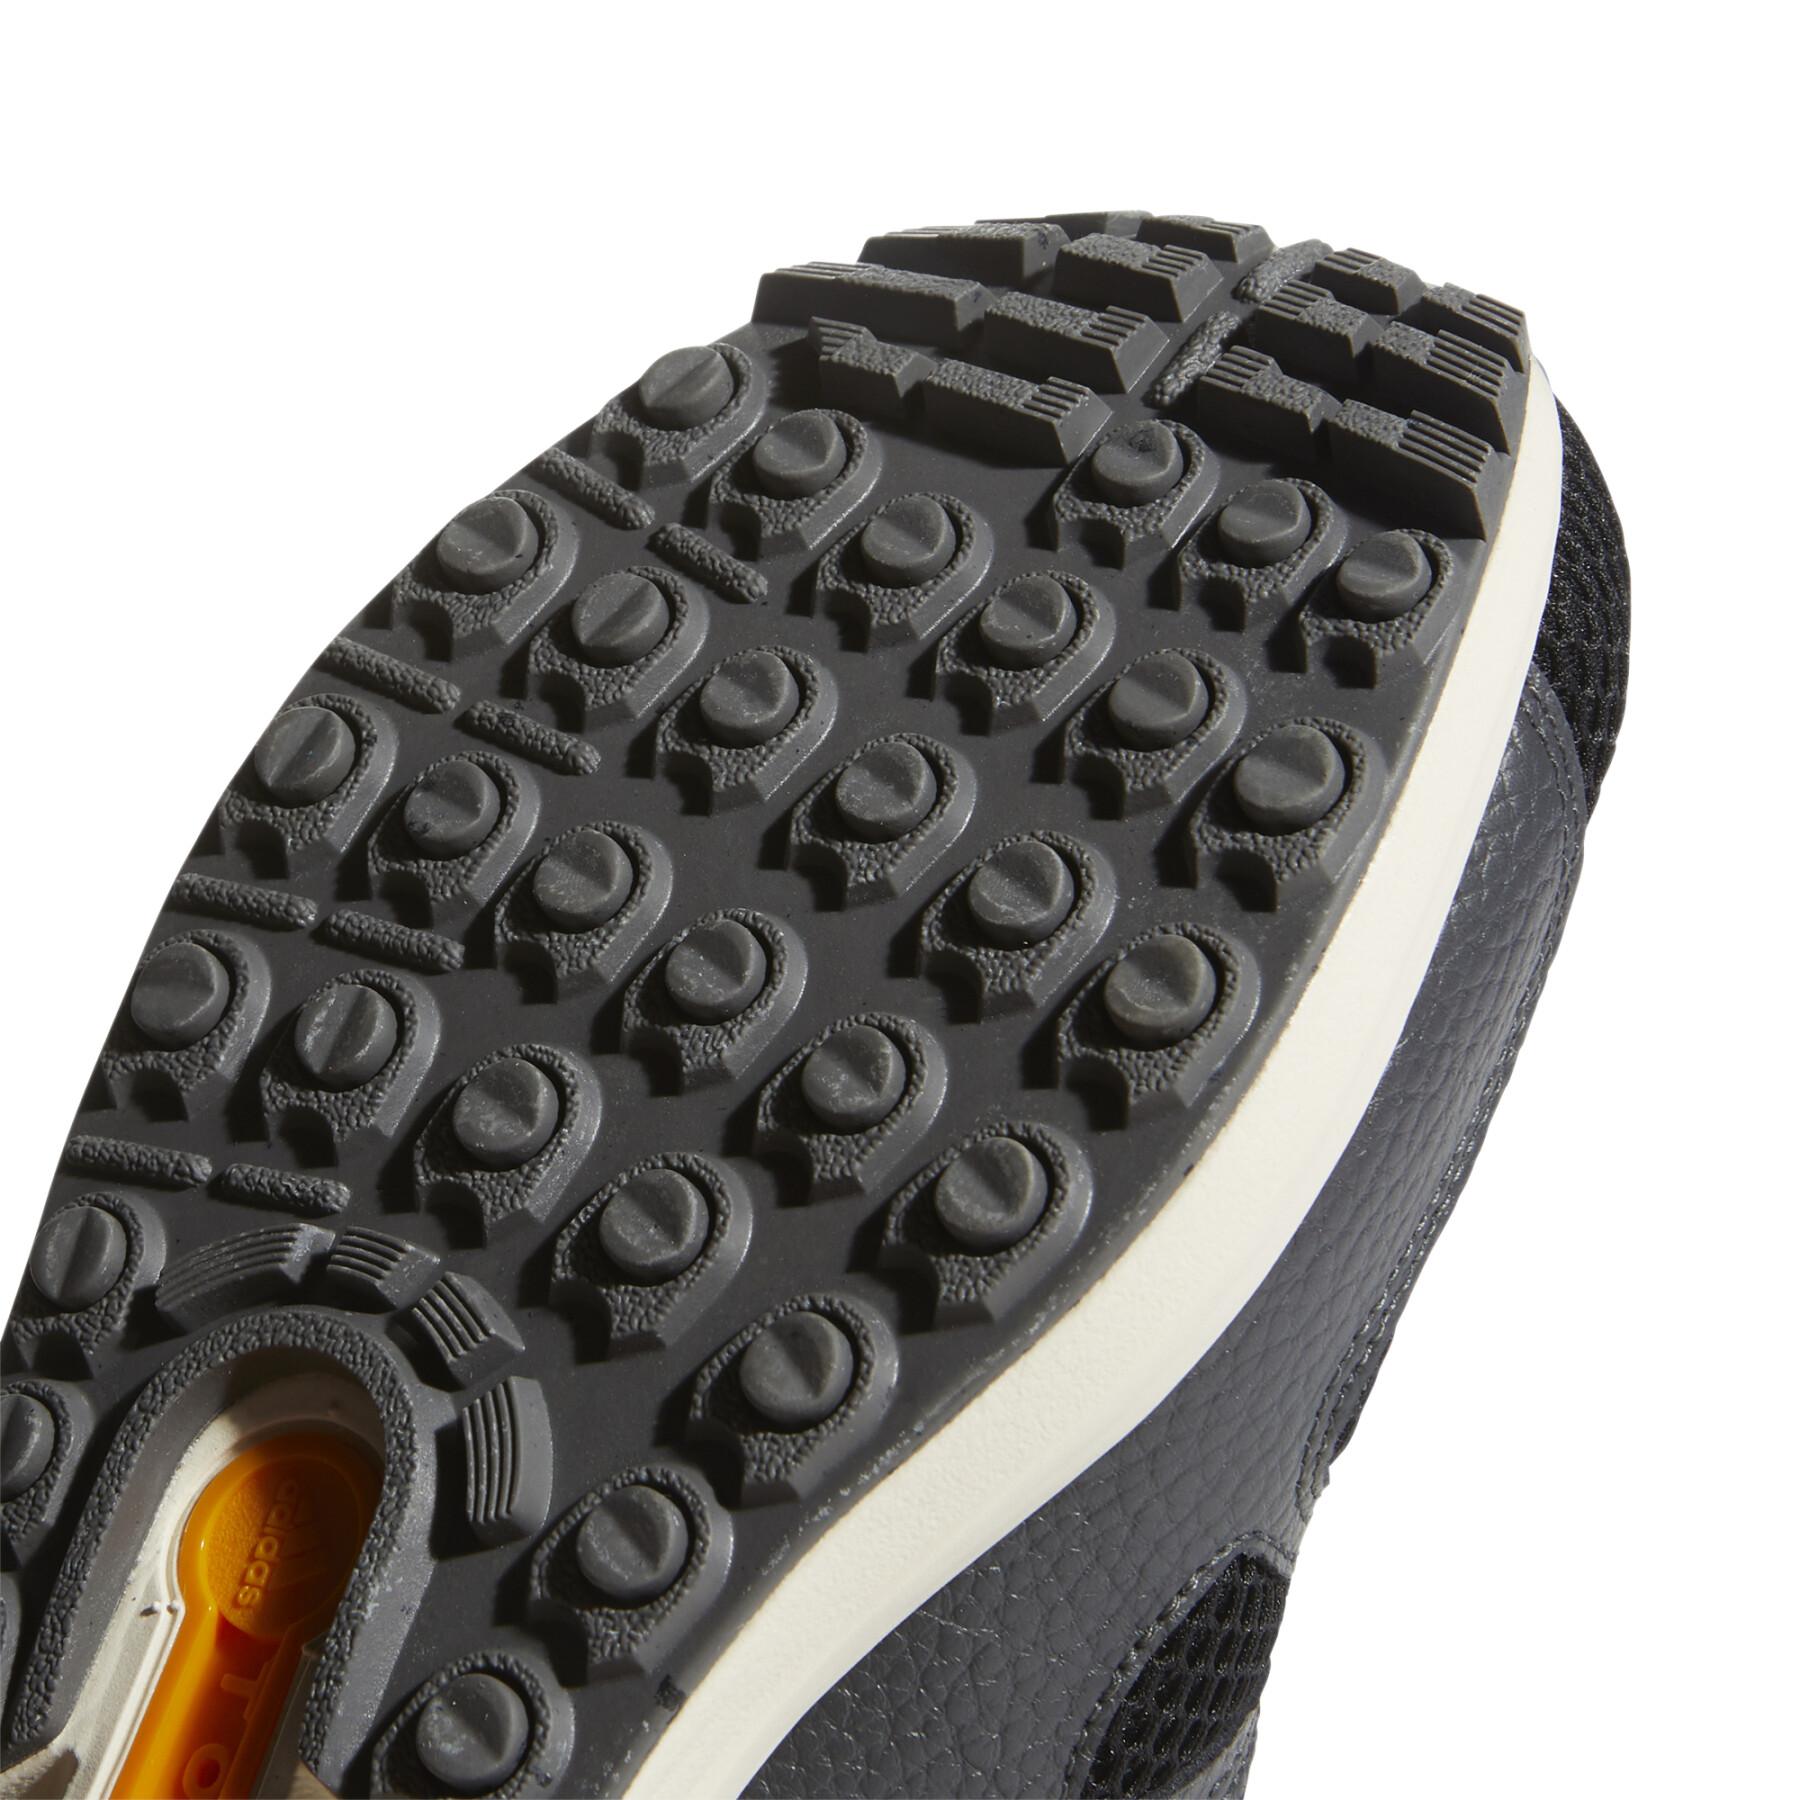 Calçado adidas Adicross ZX Primeblue